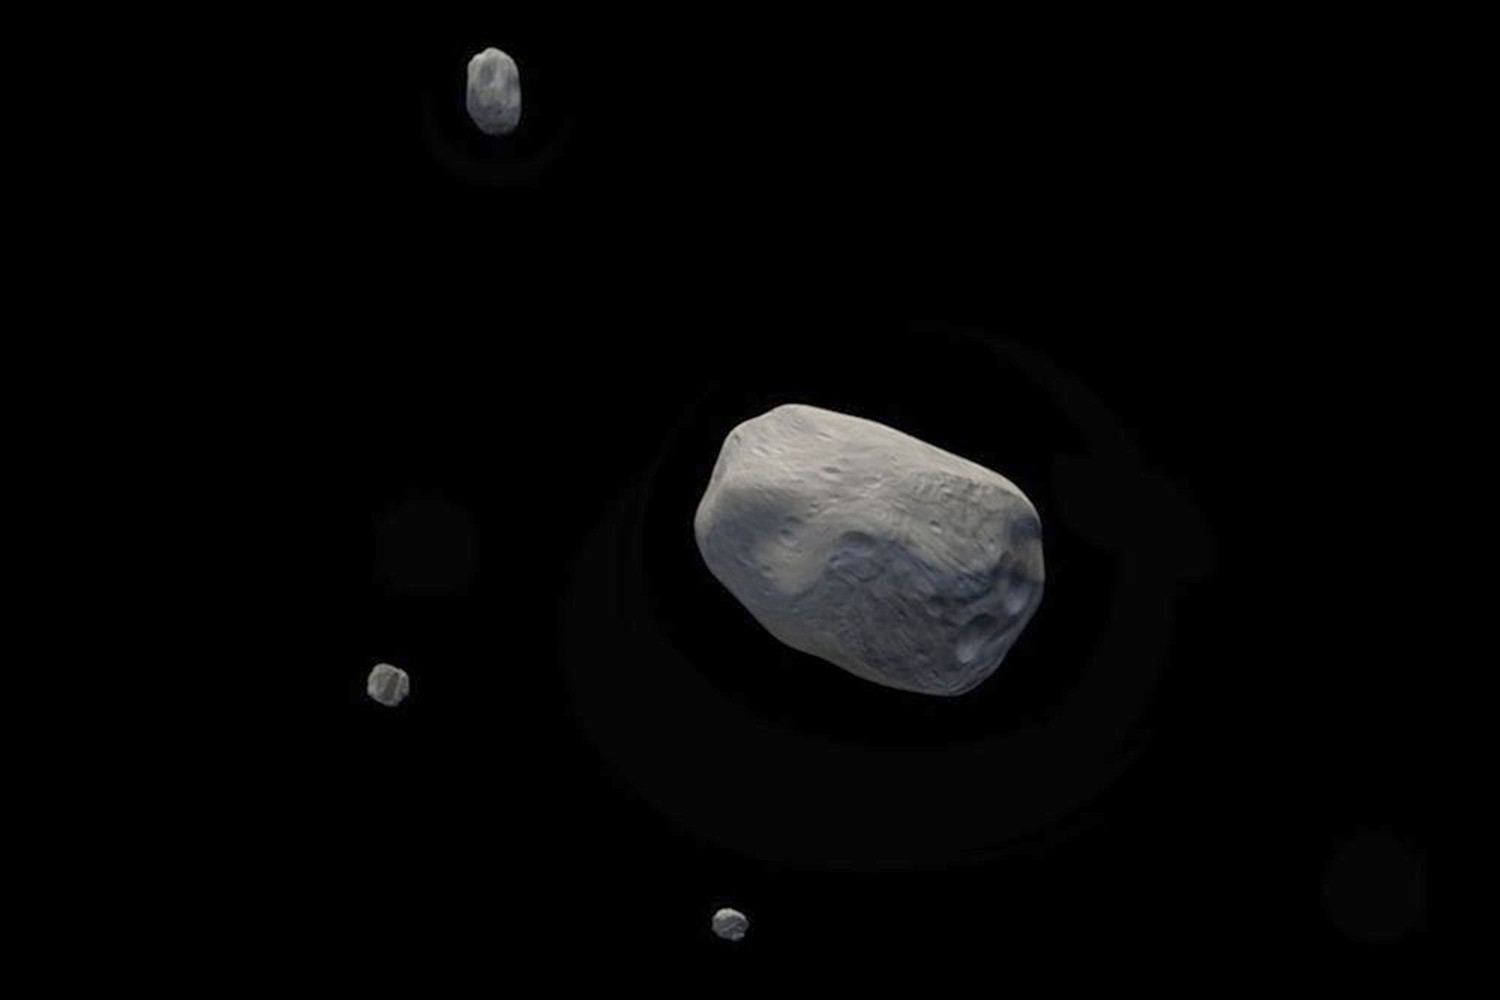 Американский зонд DART столкнулся с астероидом